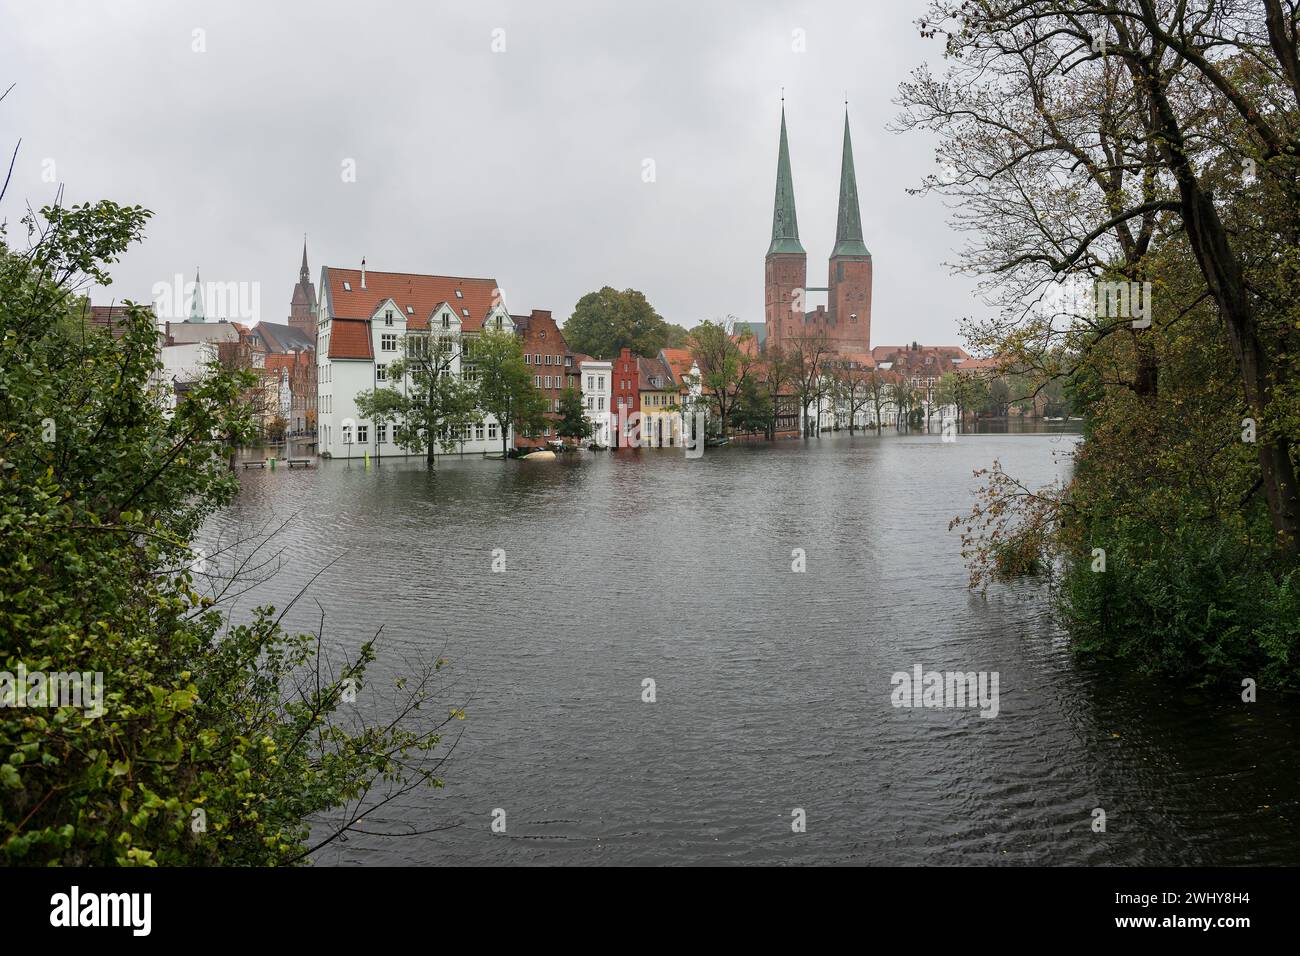 Hochwasserfluten in der Lübecker Altstadt überquert die Trave ihr Ufer, die historischen Häuser stehen im Wasser, r Stockfoto